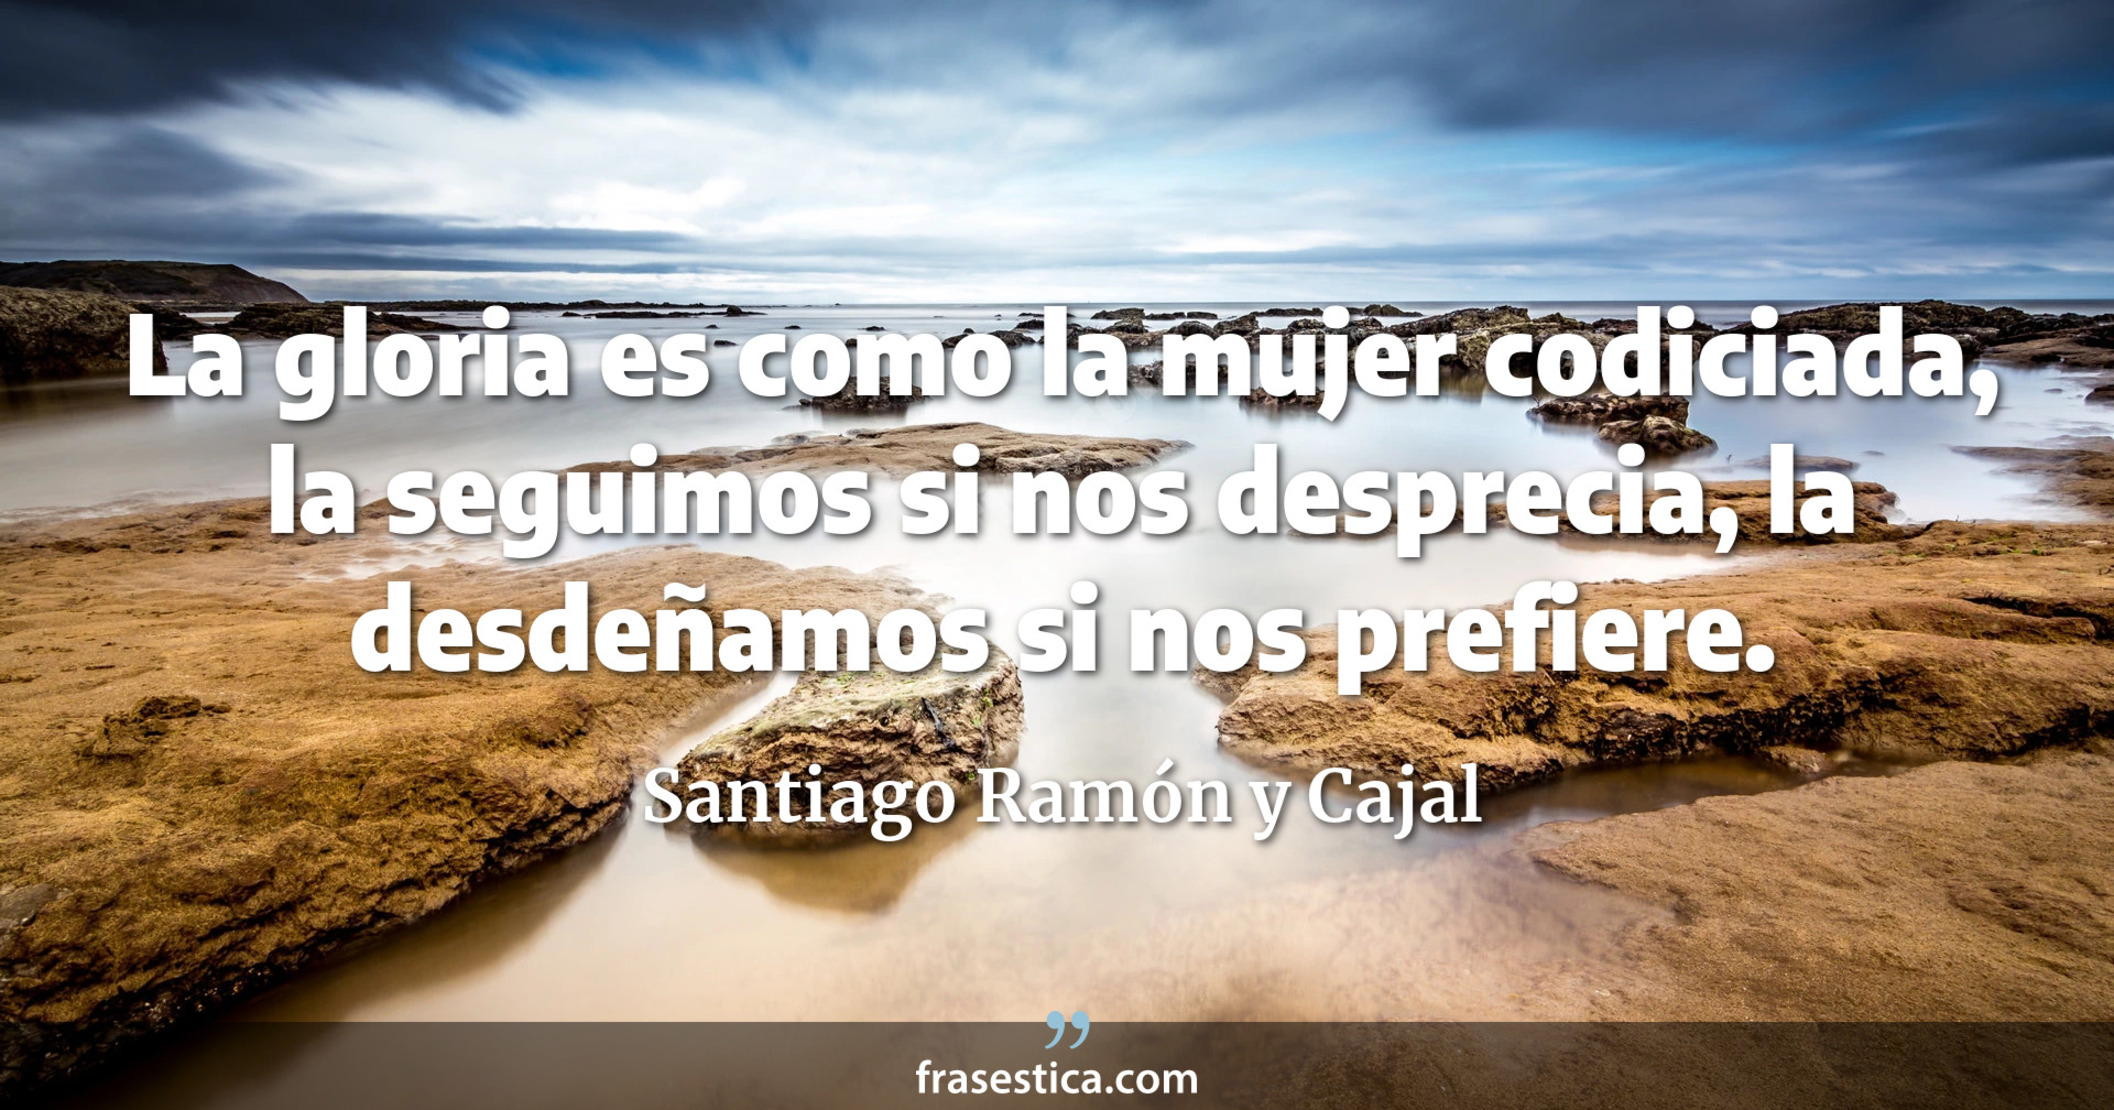 La gloria es como la mujer codiciada, la seguimos si nos desprecia, la desdeñamos si nos prefiere. - Santiago Ramón y Cajal